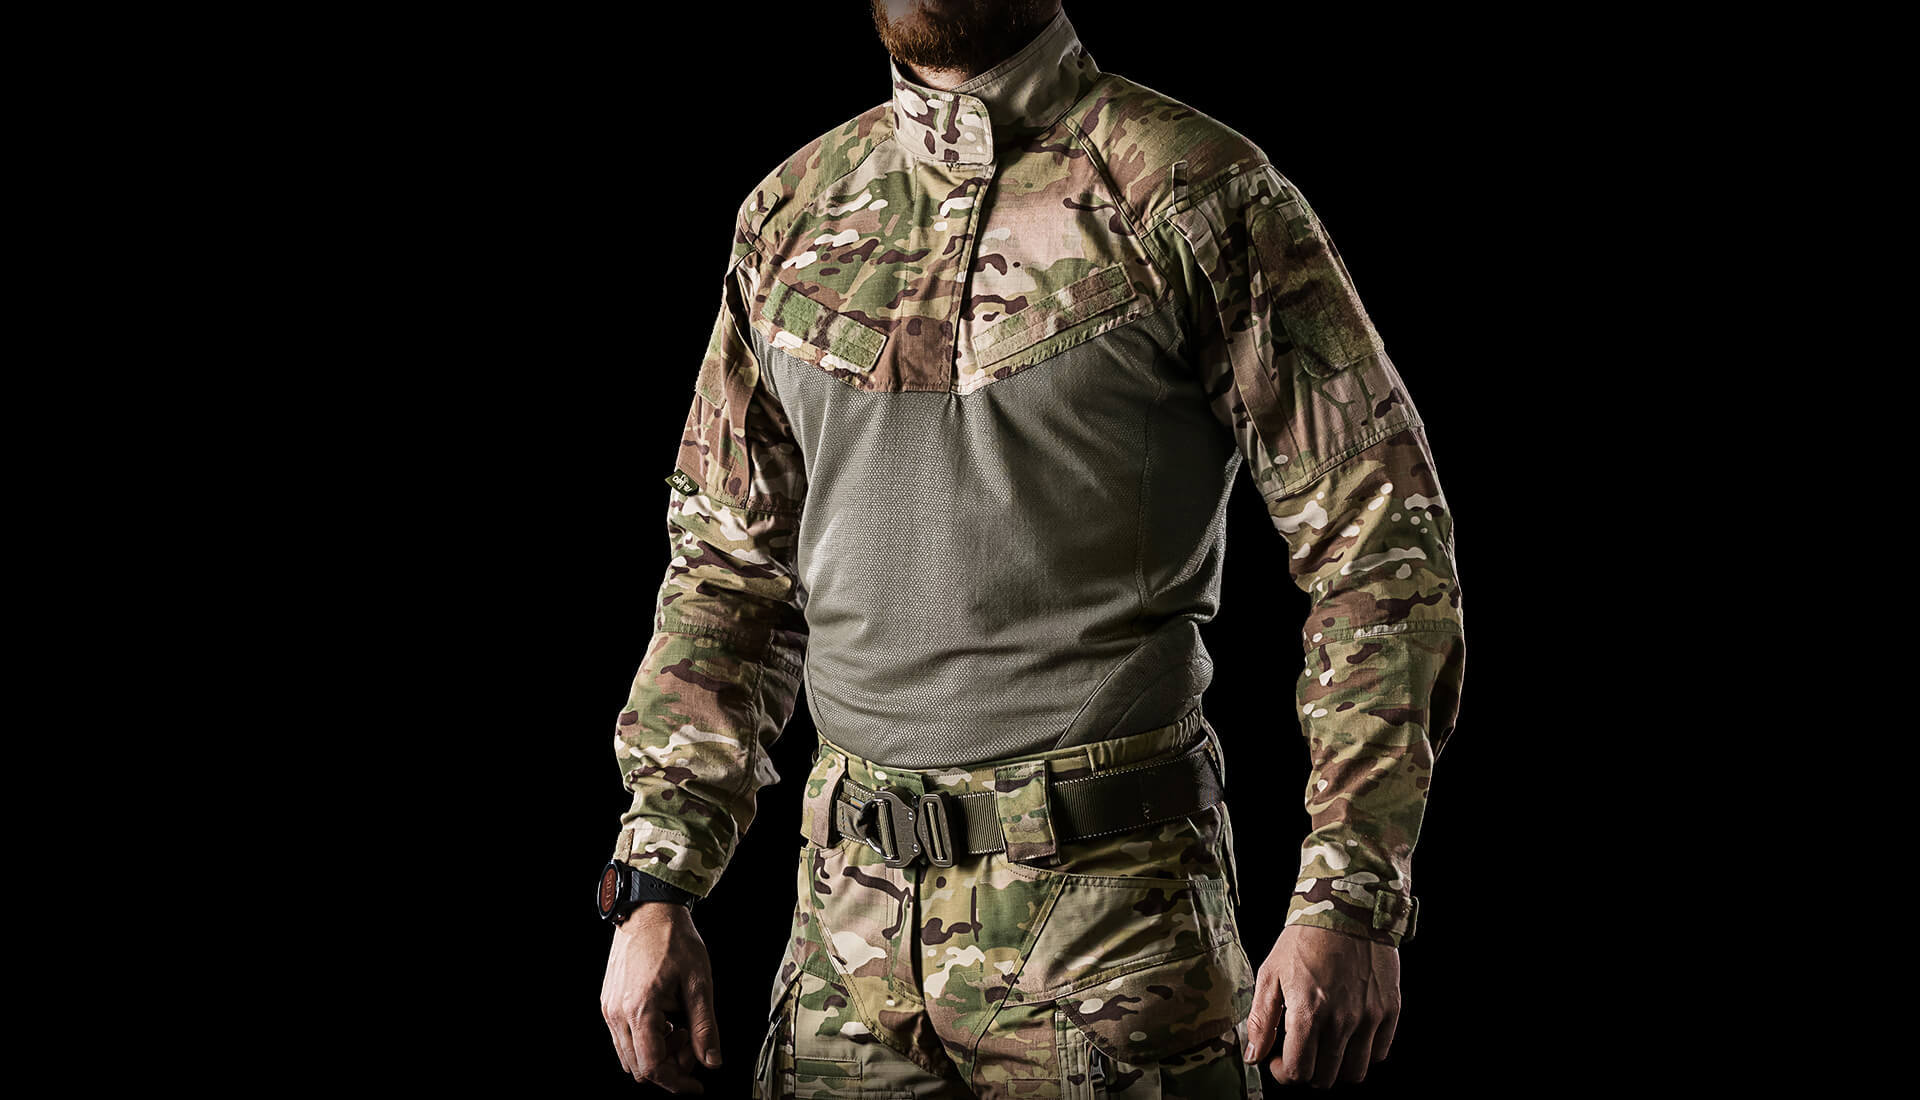 StrikerX combat shirt NYCO material baseimage a2e6b